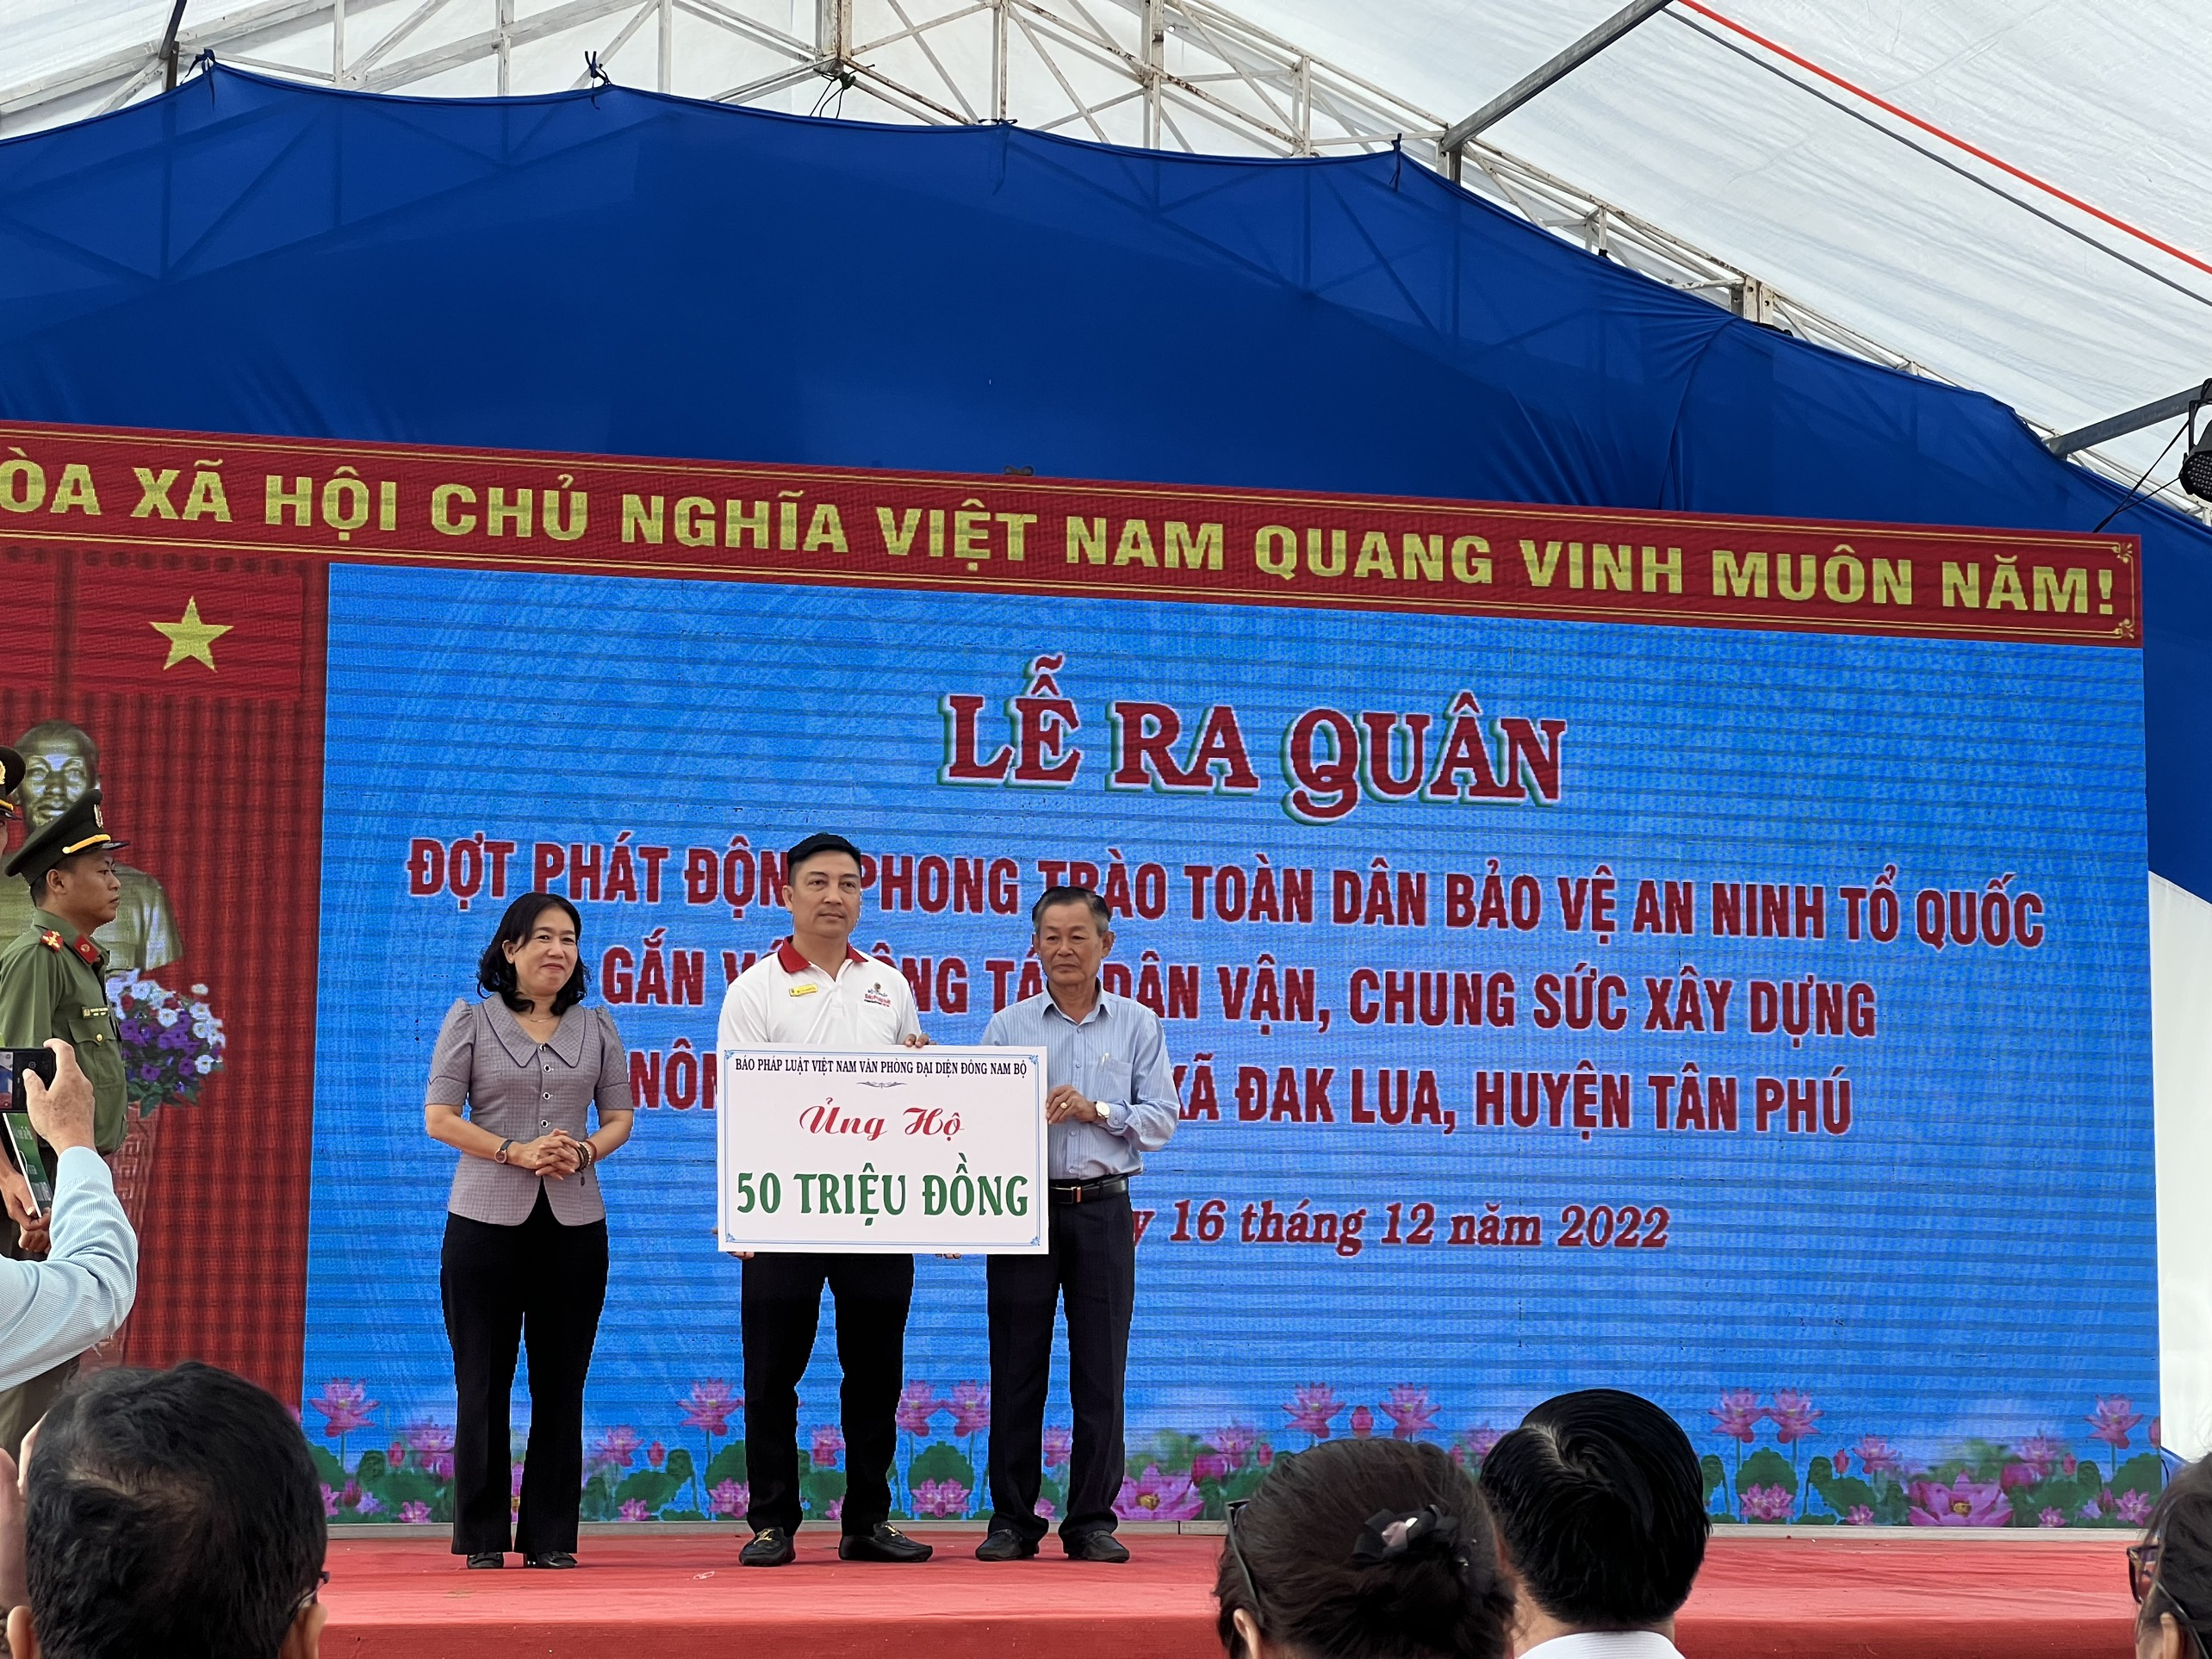 Nhân dịp này Báo Pháp luật Việt Nam VP Đông Nam Bộ ủng hộ 50 triệu đồng.